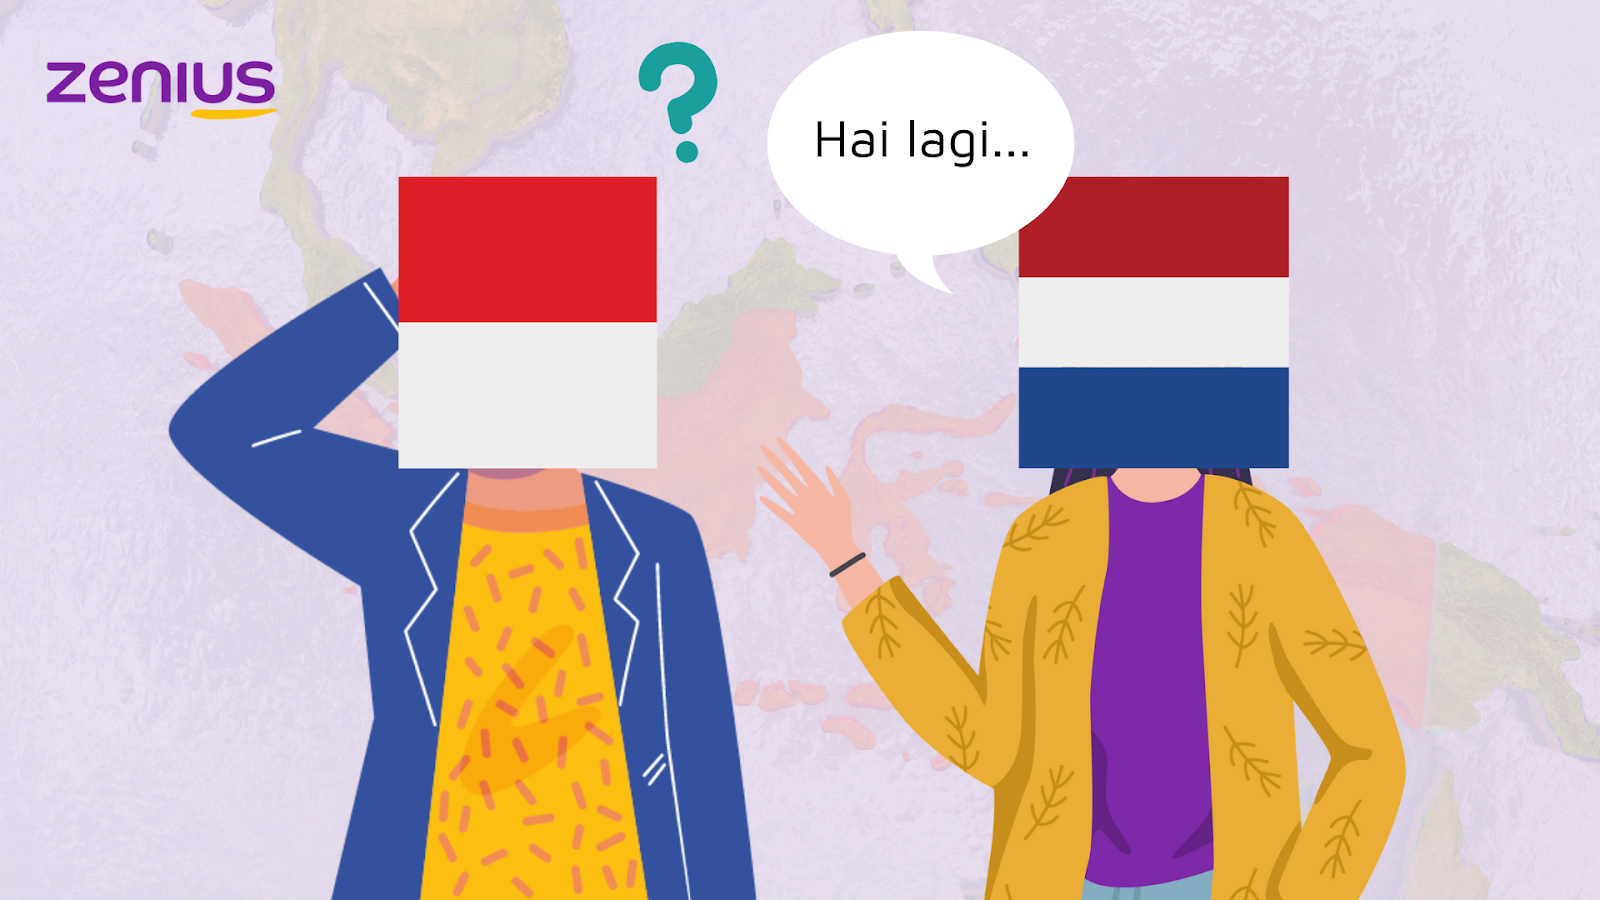 Kembalinya Belanda ke Indonesia jadi pemicu revolusi kemerdekaan Indonesia.